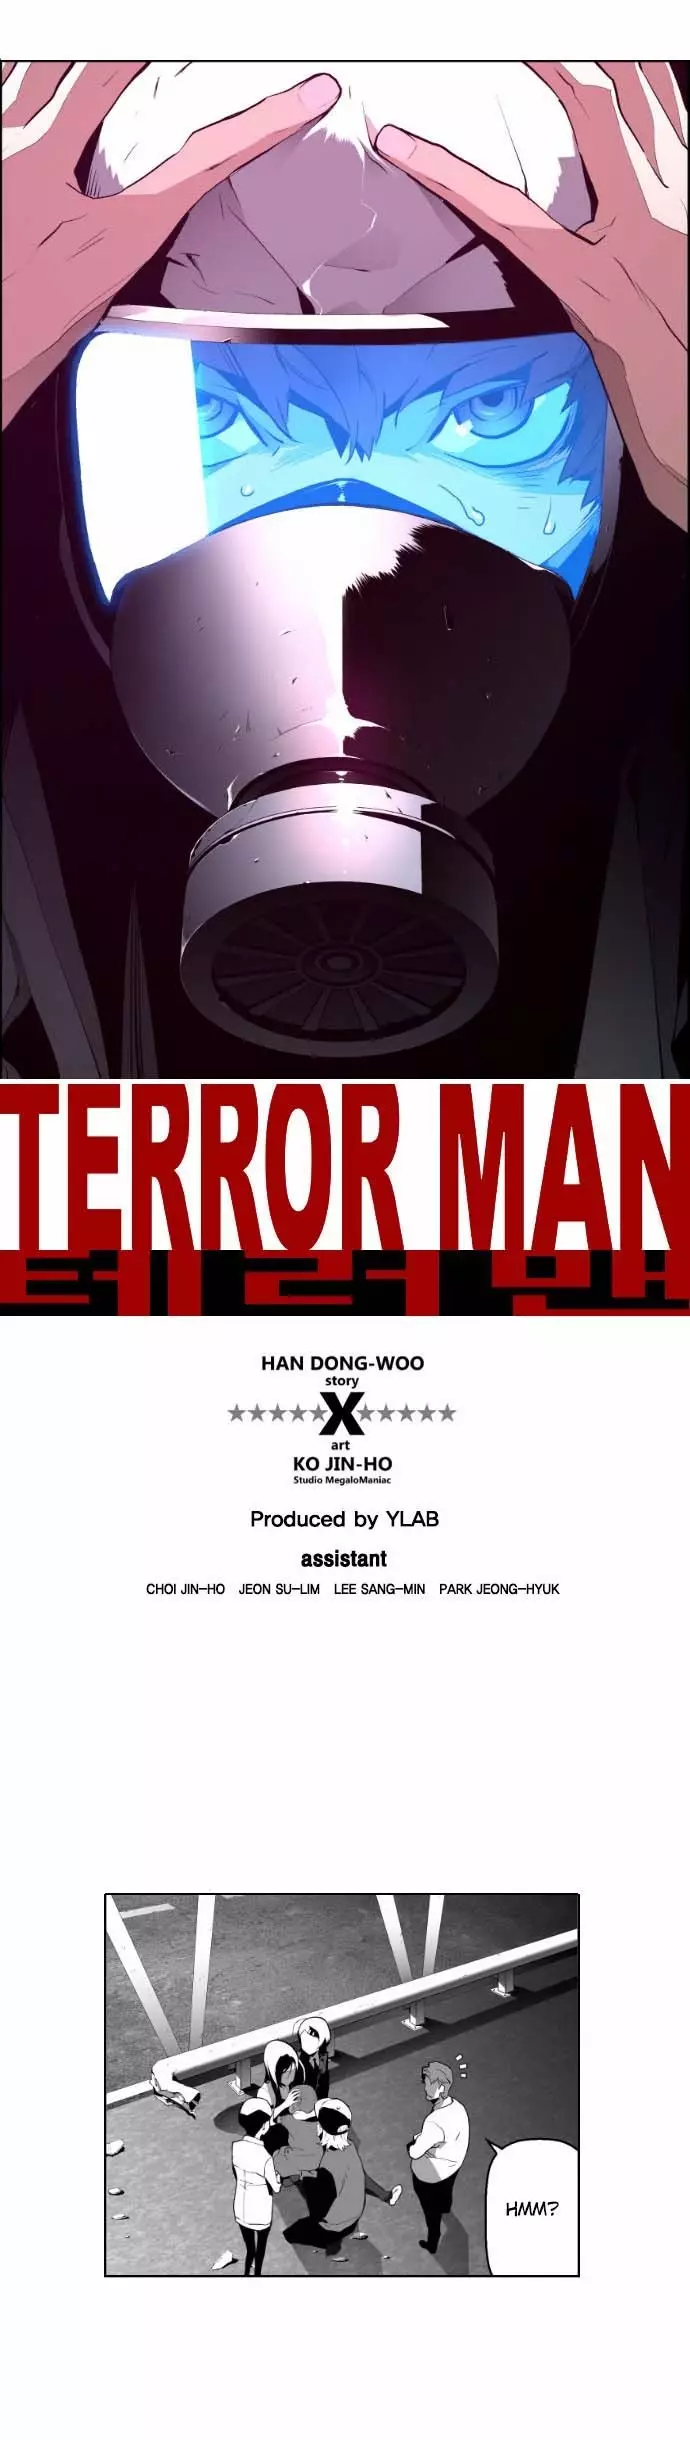 Terror Man - 7 page p_00006